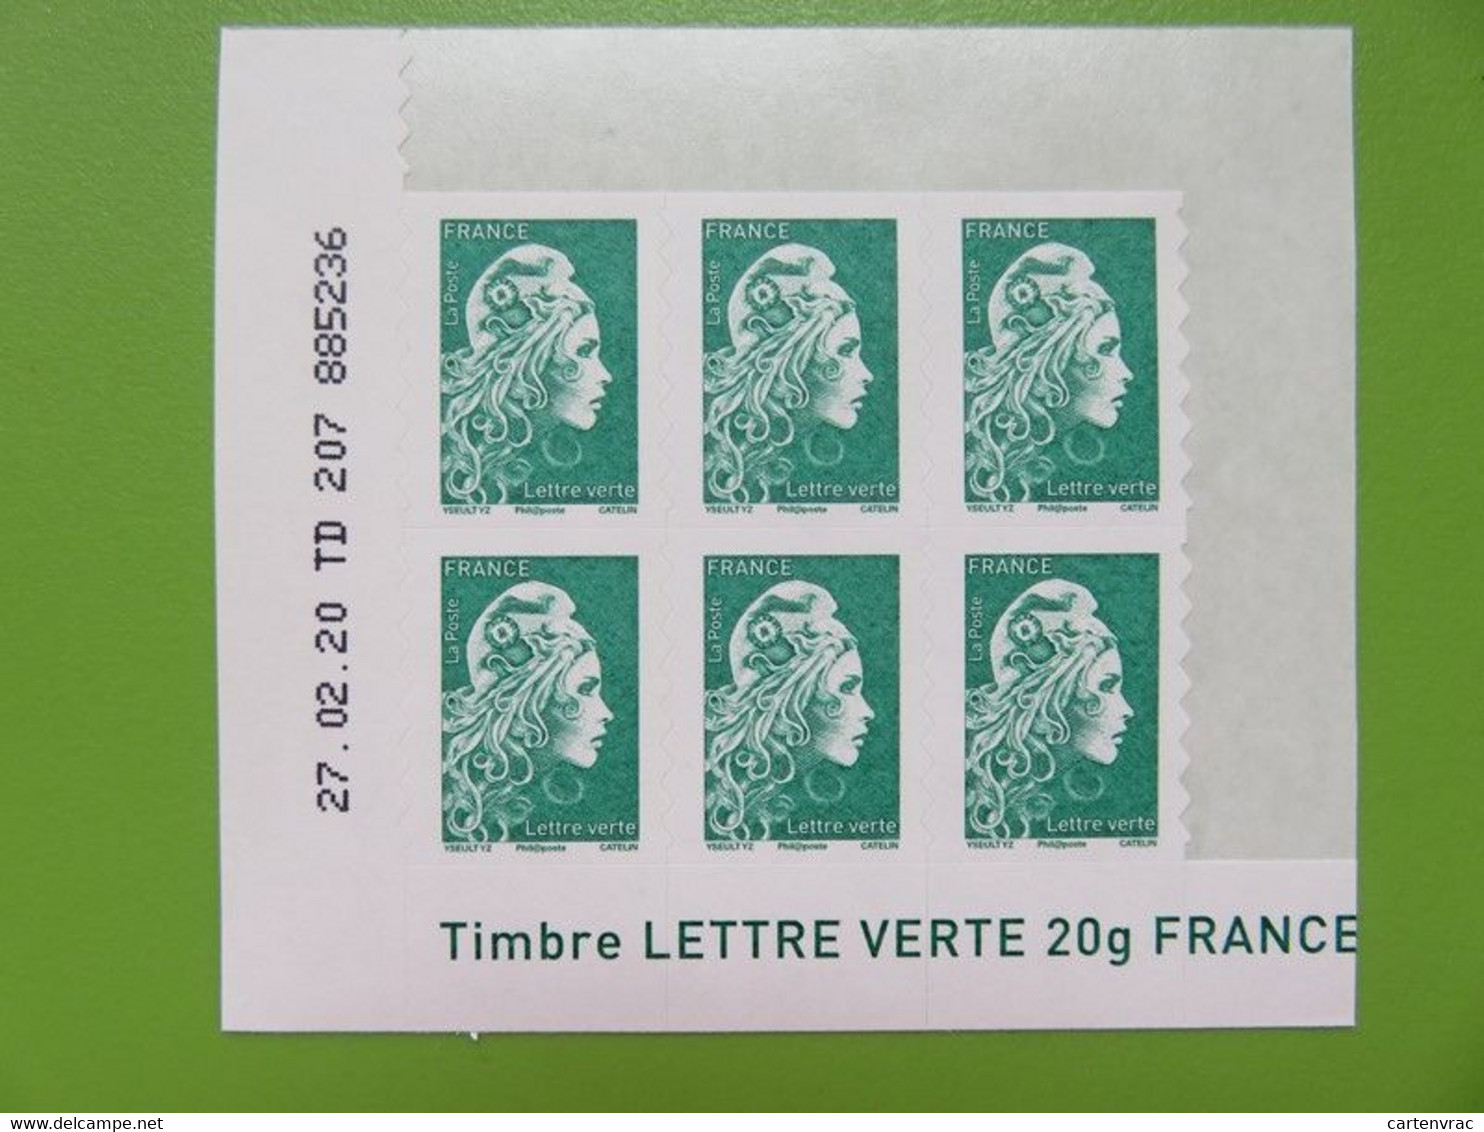 Timbre France YT 1598 AA - Coin Daté - Marianne D'Yseult Digan - L'engagée - Autocollant - Lettre Verte - Neuf - 2018 - 2010-2019